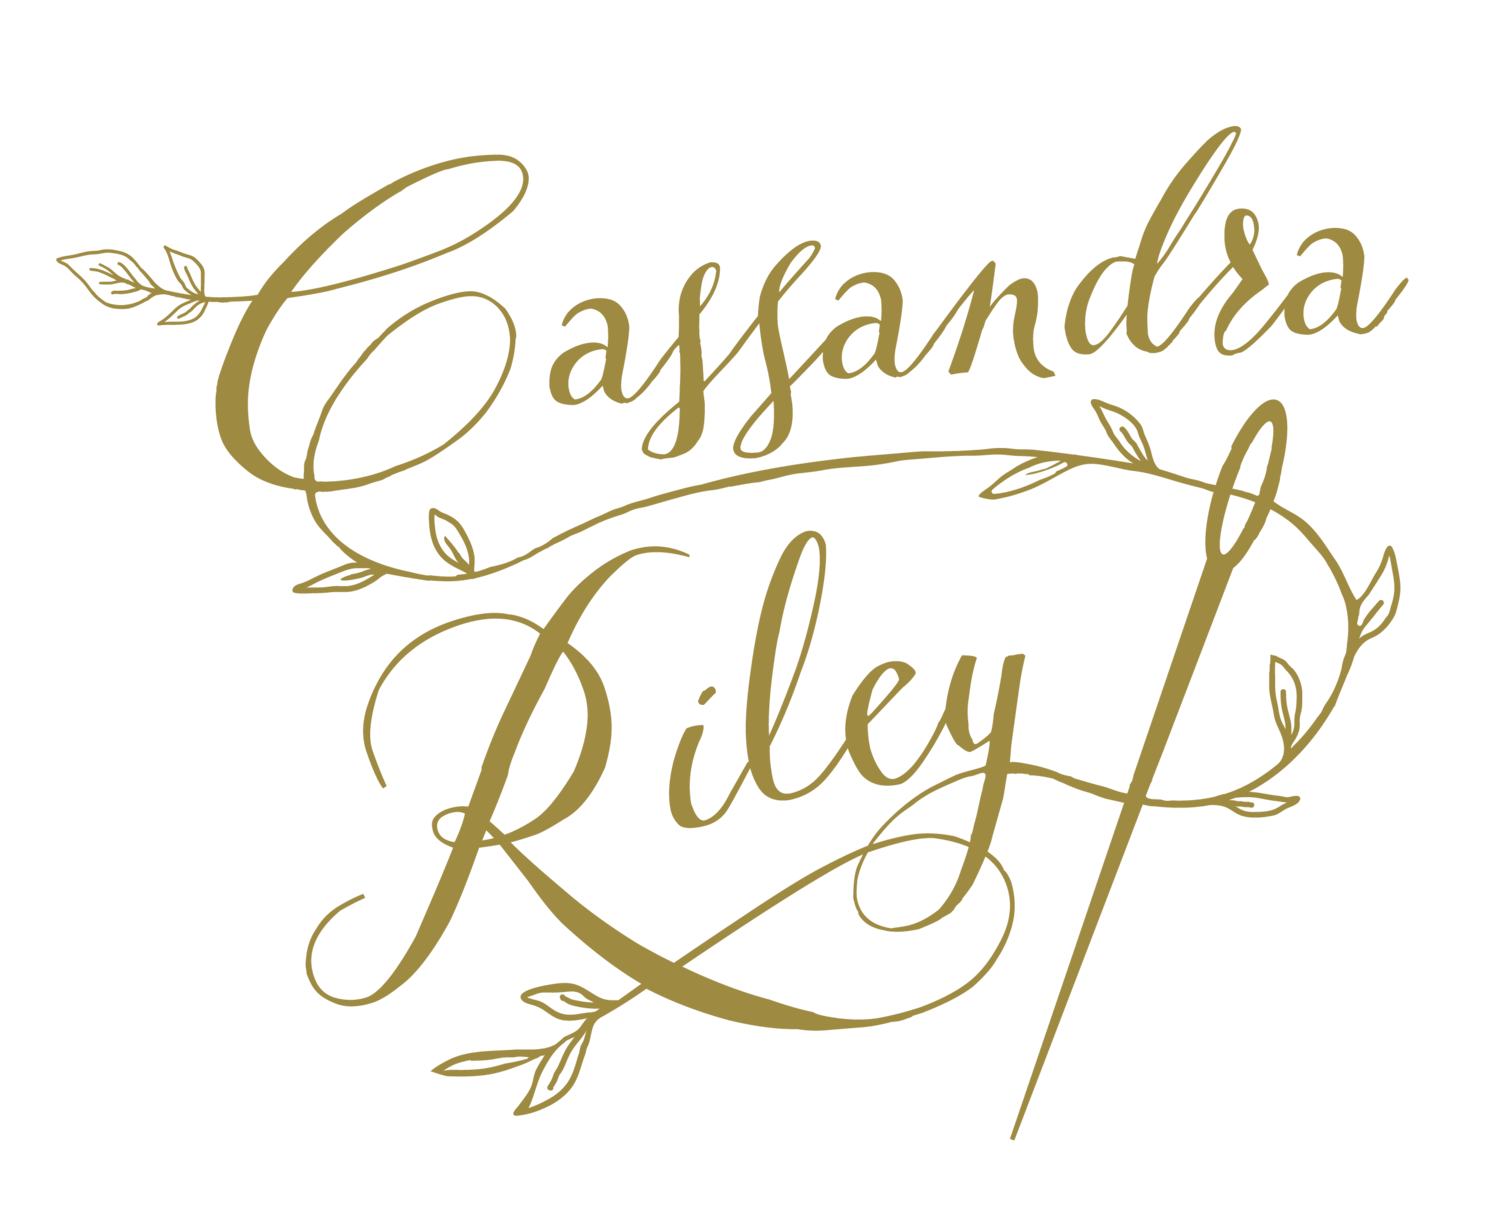 Cassandra Riley Designs